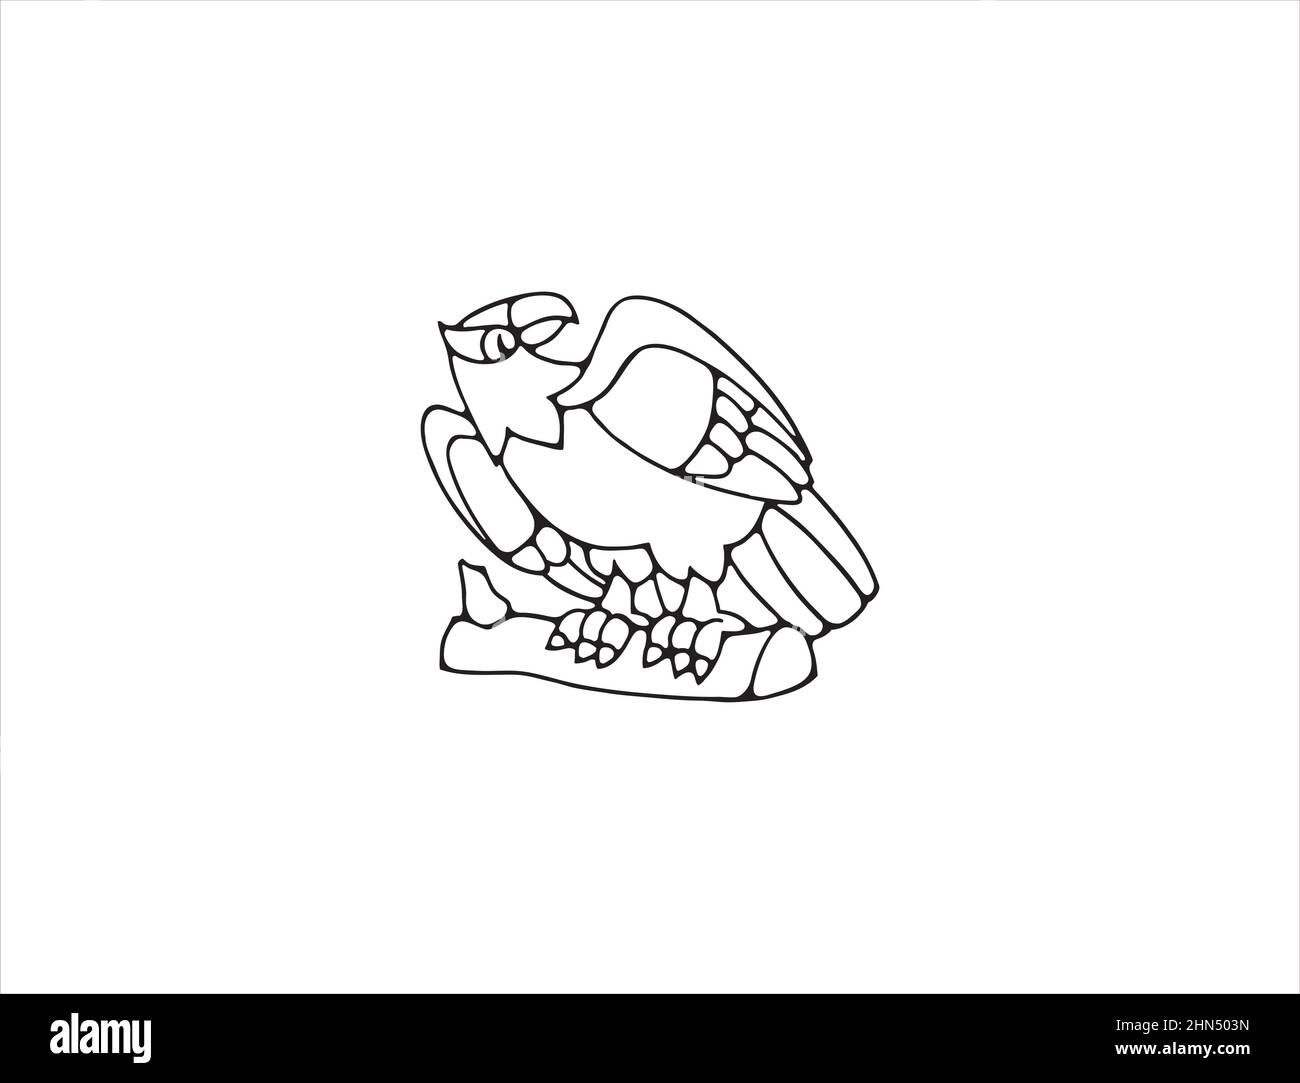 Aquila seduta su un ramo. Simbolo di libertà. Illustrazione vettoriale isolata in bianco e nero. Illustrazione Vettoriale